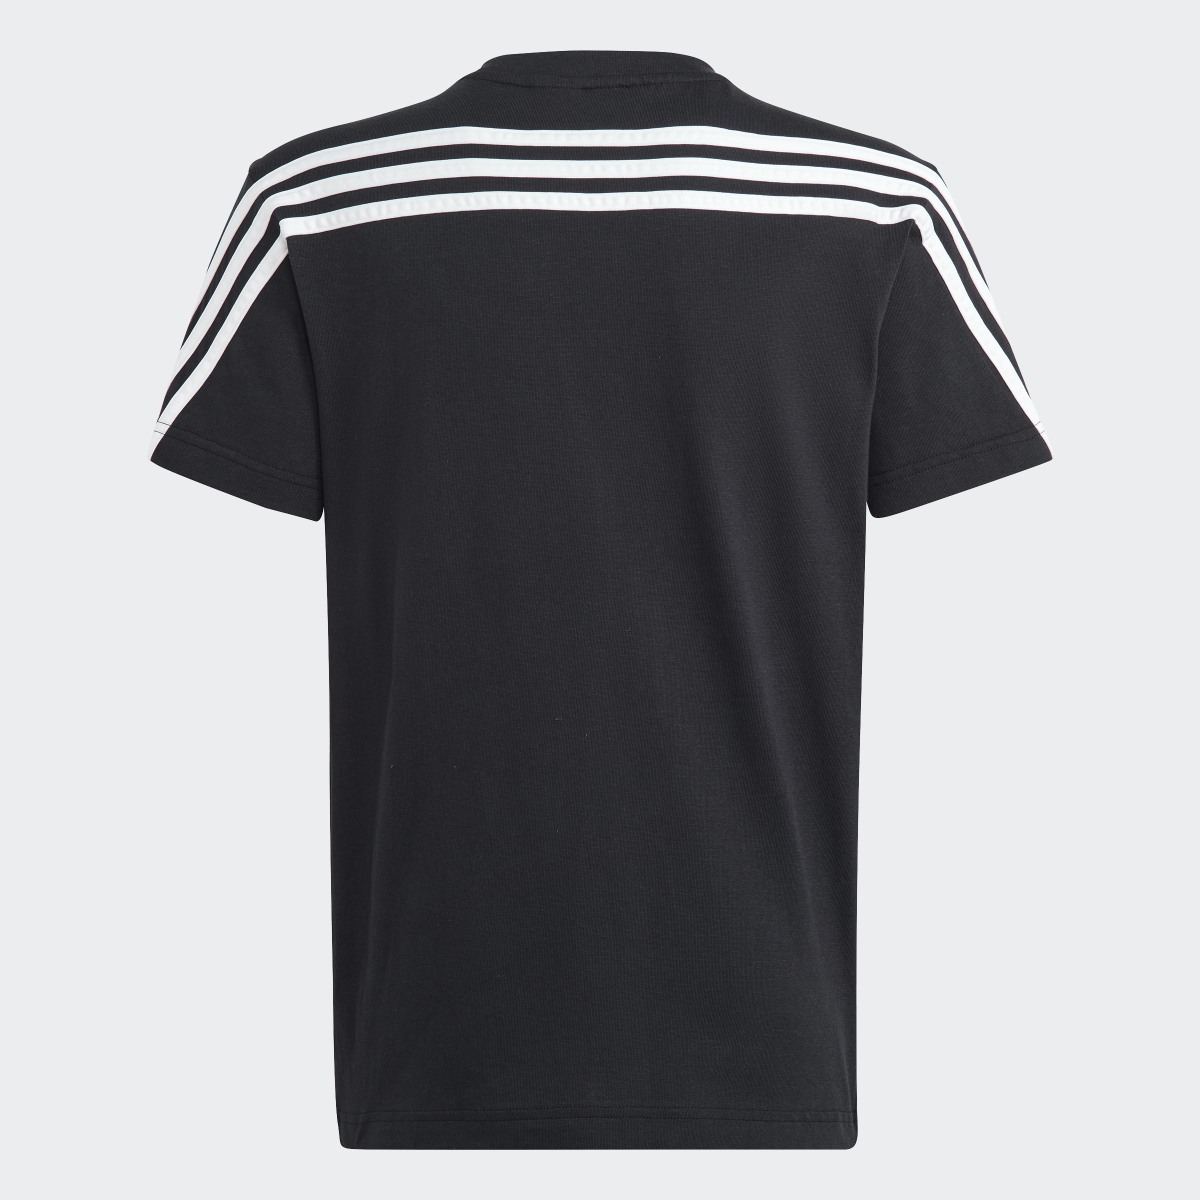 Adidas T-shirt 3-Stripes Future Icons. 4